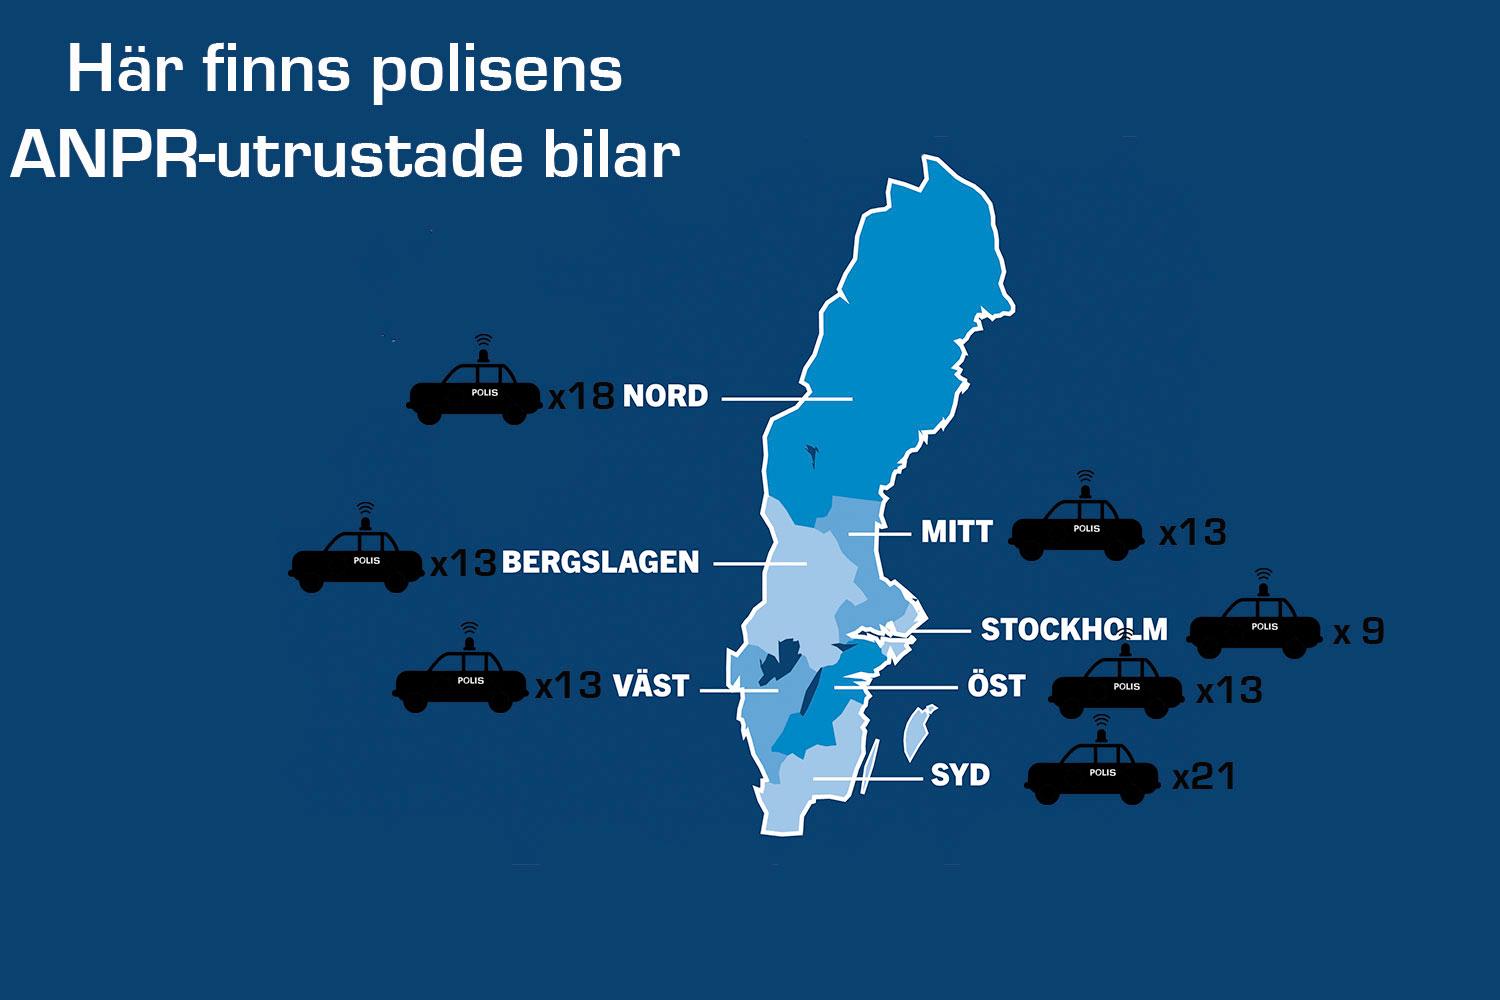 Flest ANPR-utrustade polisbilar finns i region SYD.